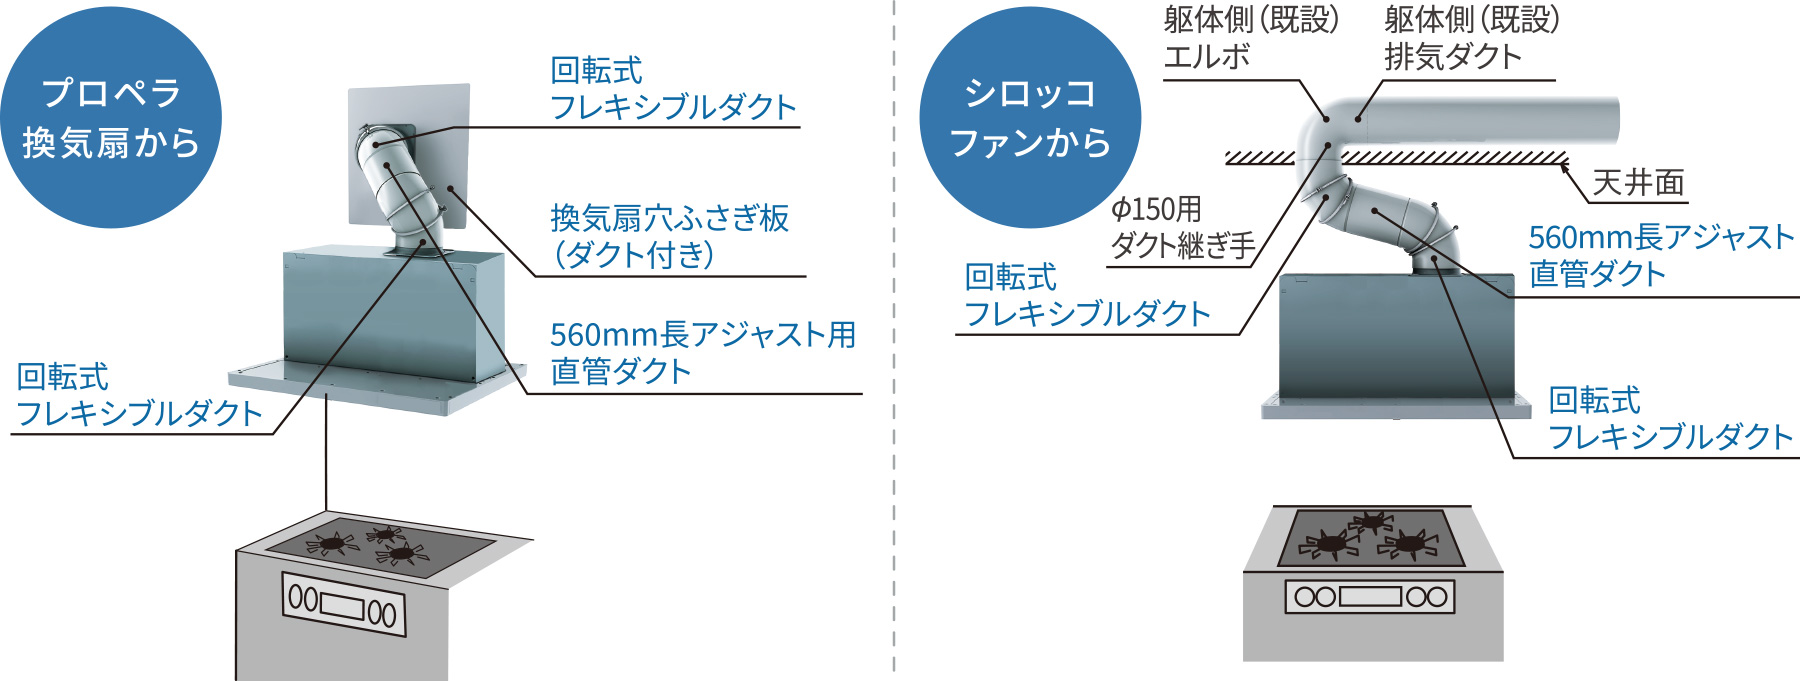 富士工業 SMAYAL4UP-MWM ARIAFINA レンジフード用上ふさぎ板 ※上ふさぎ板だけの販売は行っておりません。  ※沖縄,離島への販売は出来ません。